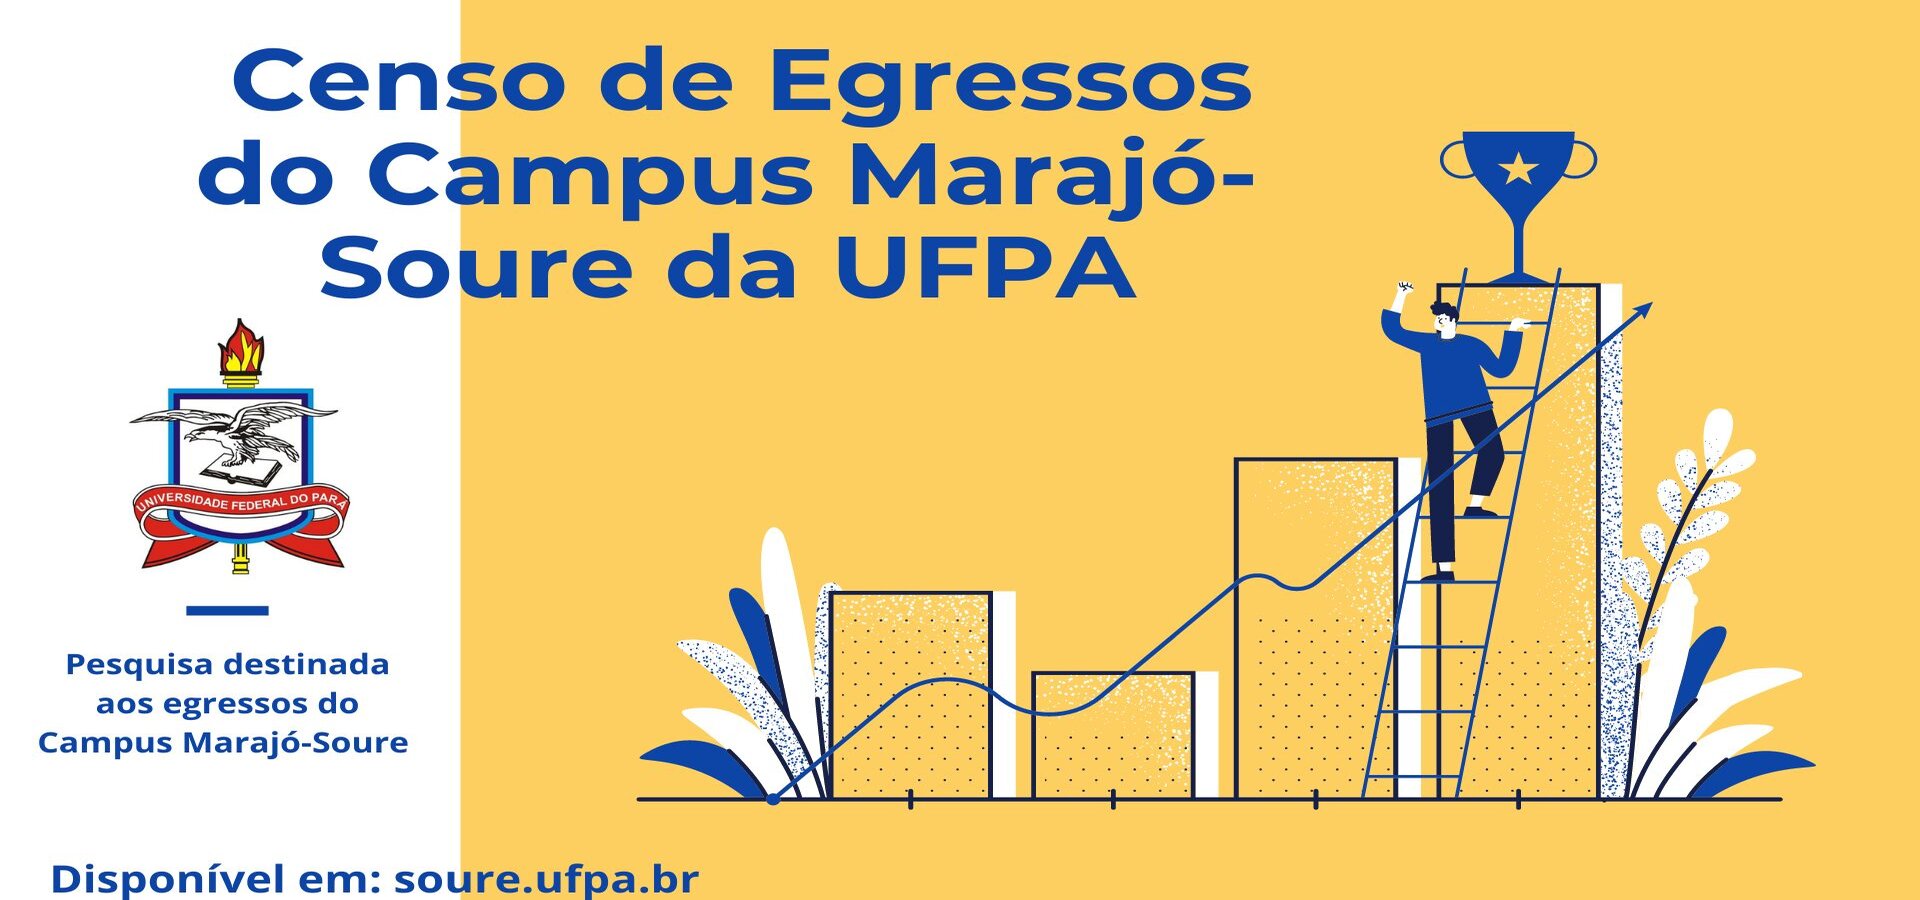 Censo de Egressos do Campus Universitário do Marajó - Soure